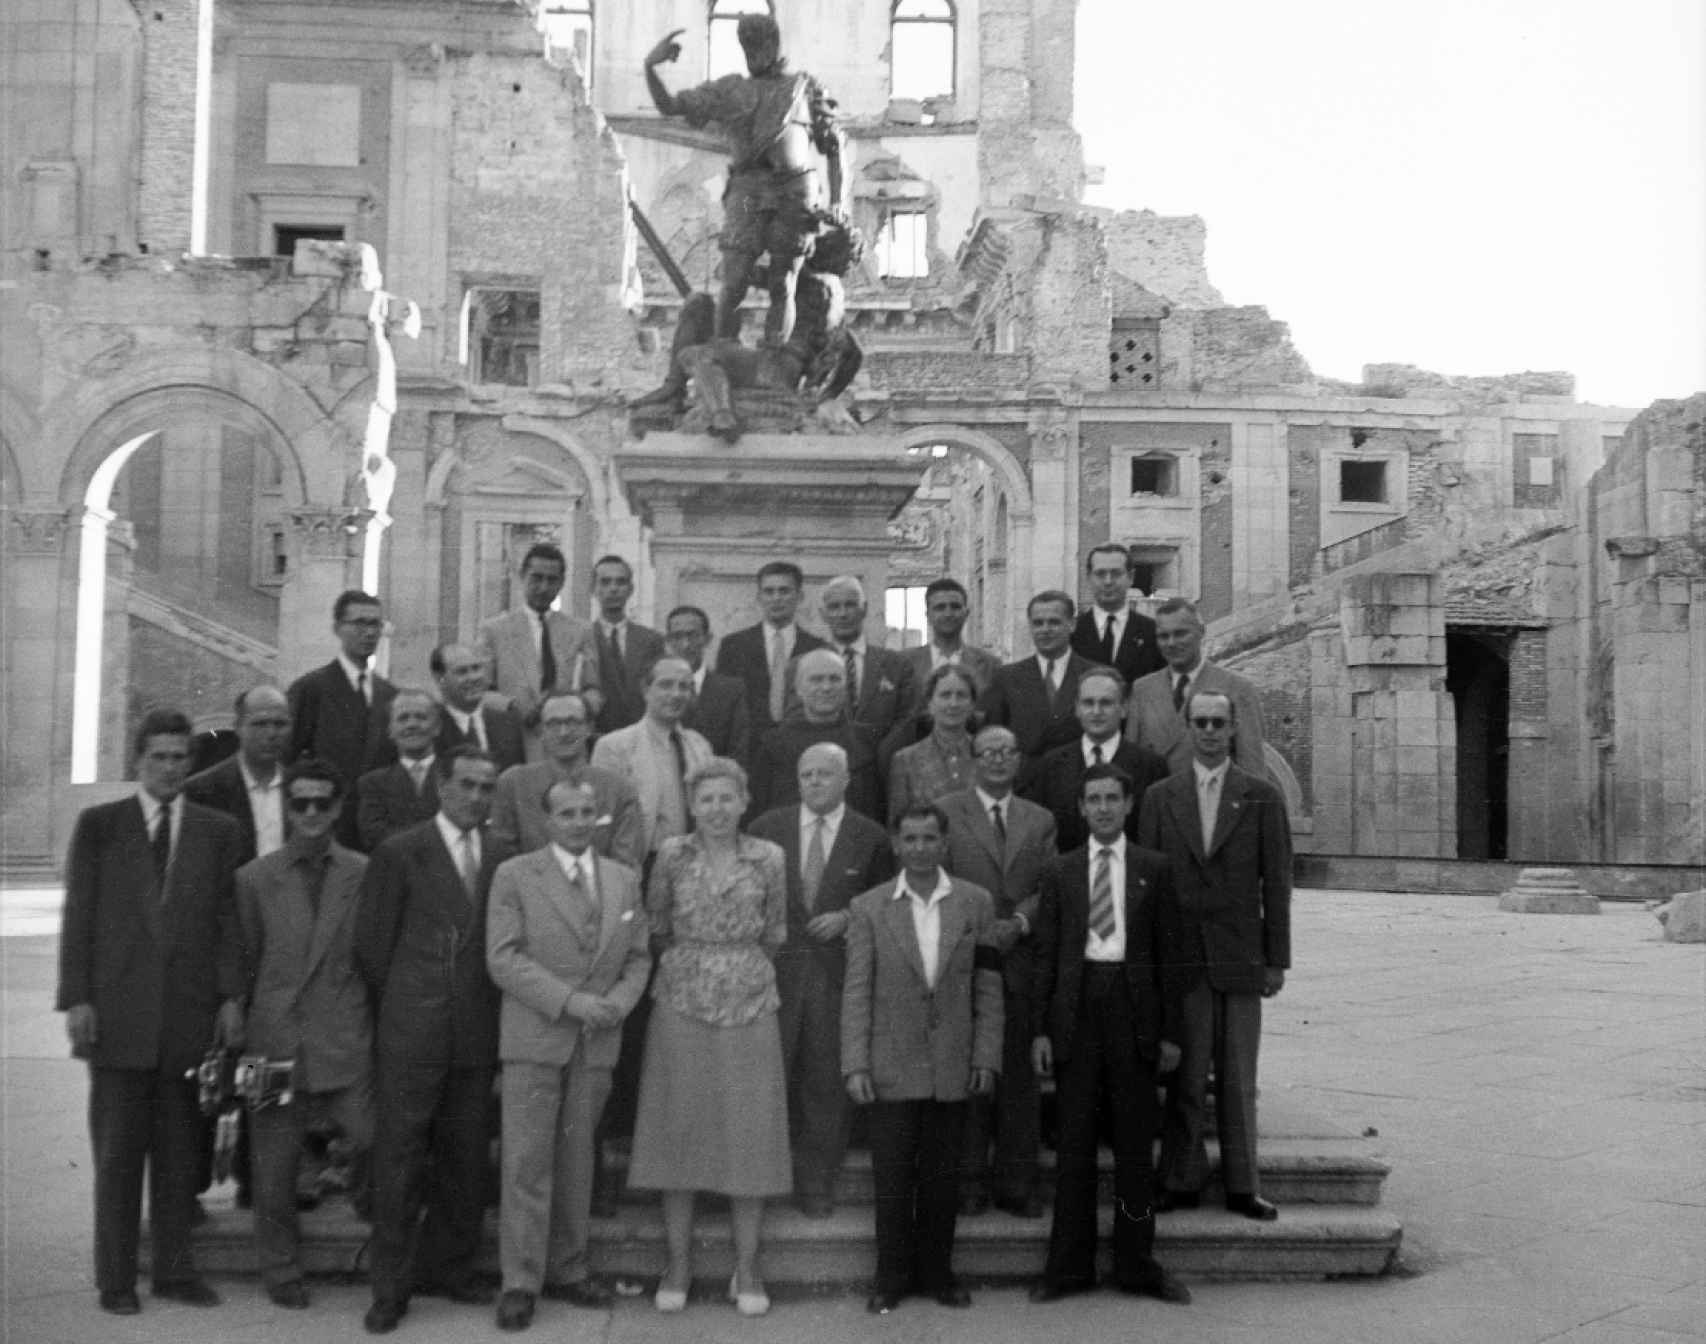 Grupo de personas junto a la escultura de Carlos V en el patio del Alcázar de Toledo el 28 de septiembre de 1951 (Foto cedida por el autor perteneciente a la Colección Rodríguez.